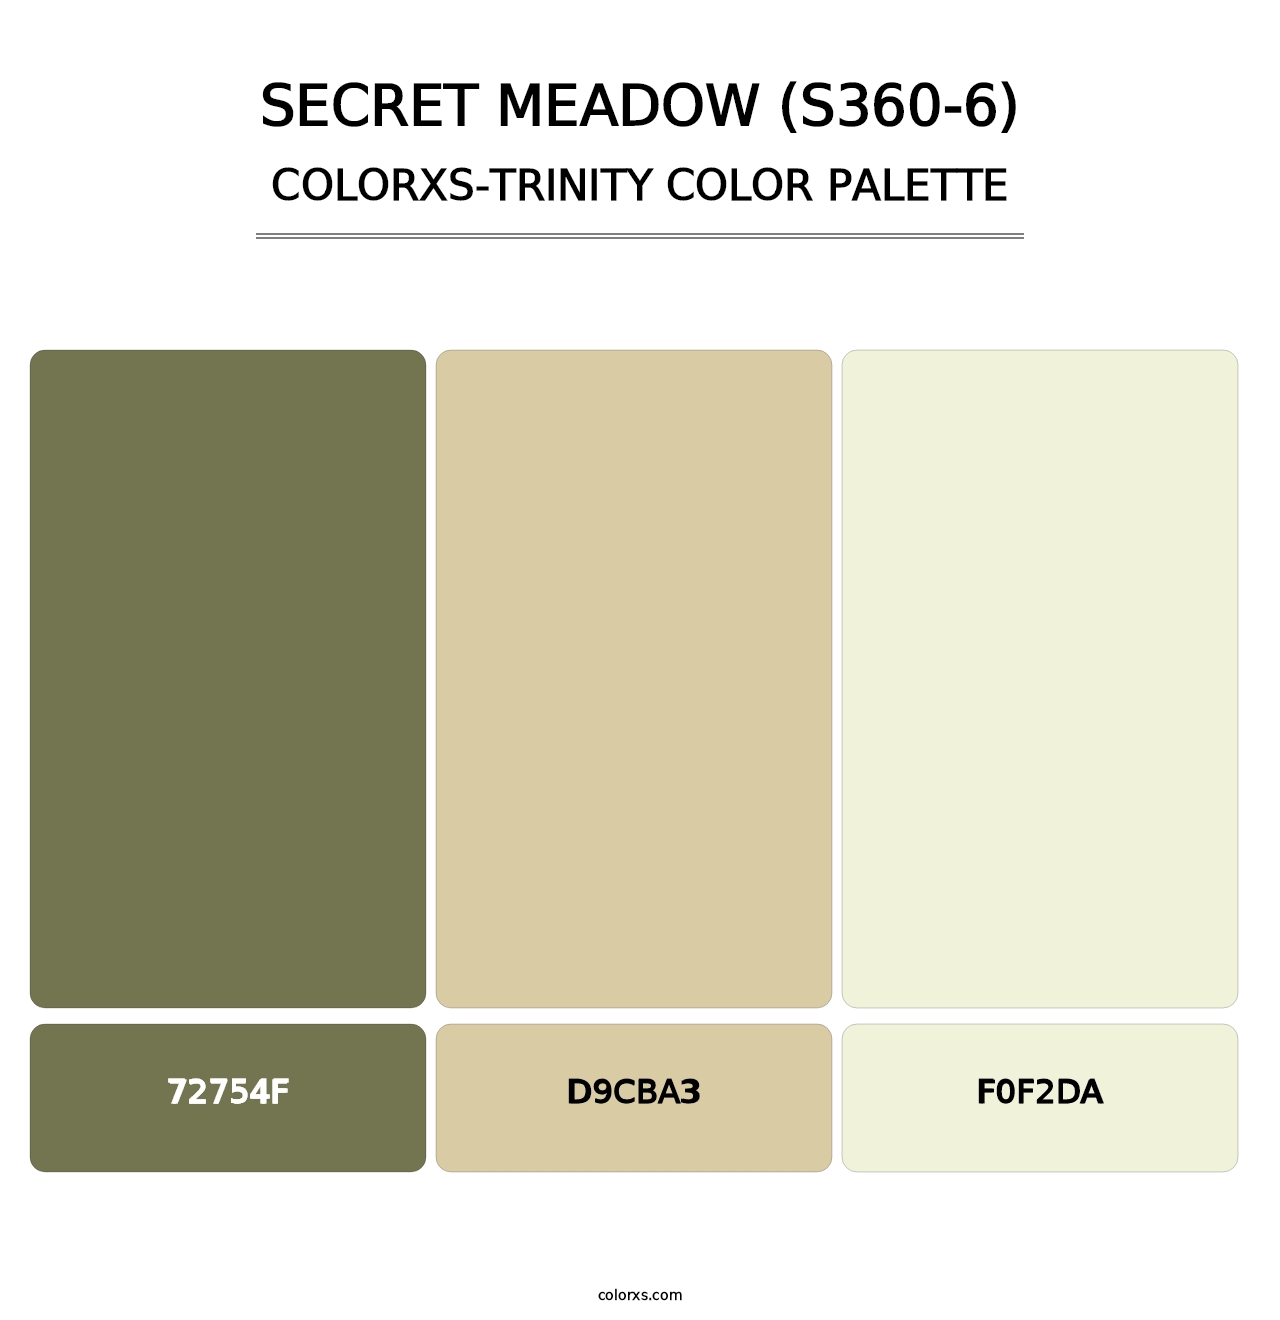 Secret Meadow (S360-6) - Colorxs Trinity Palette